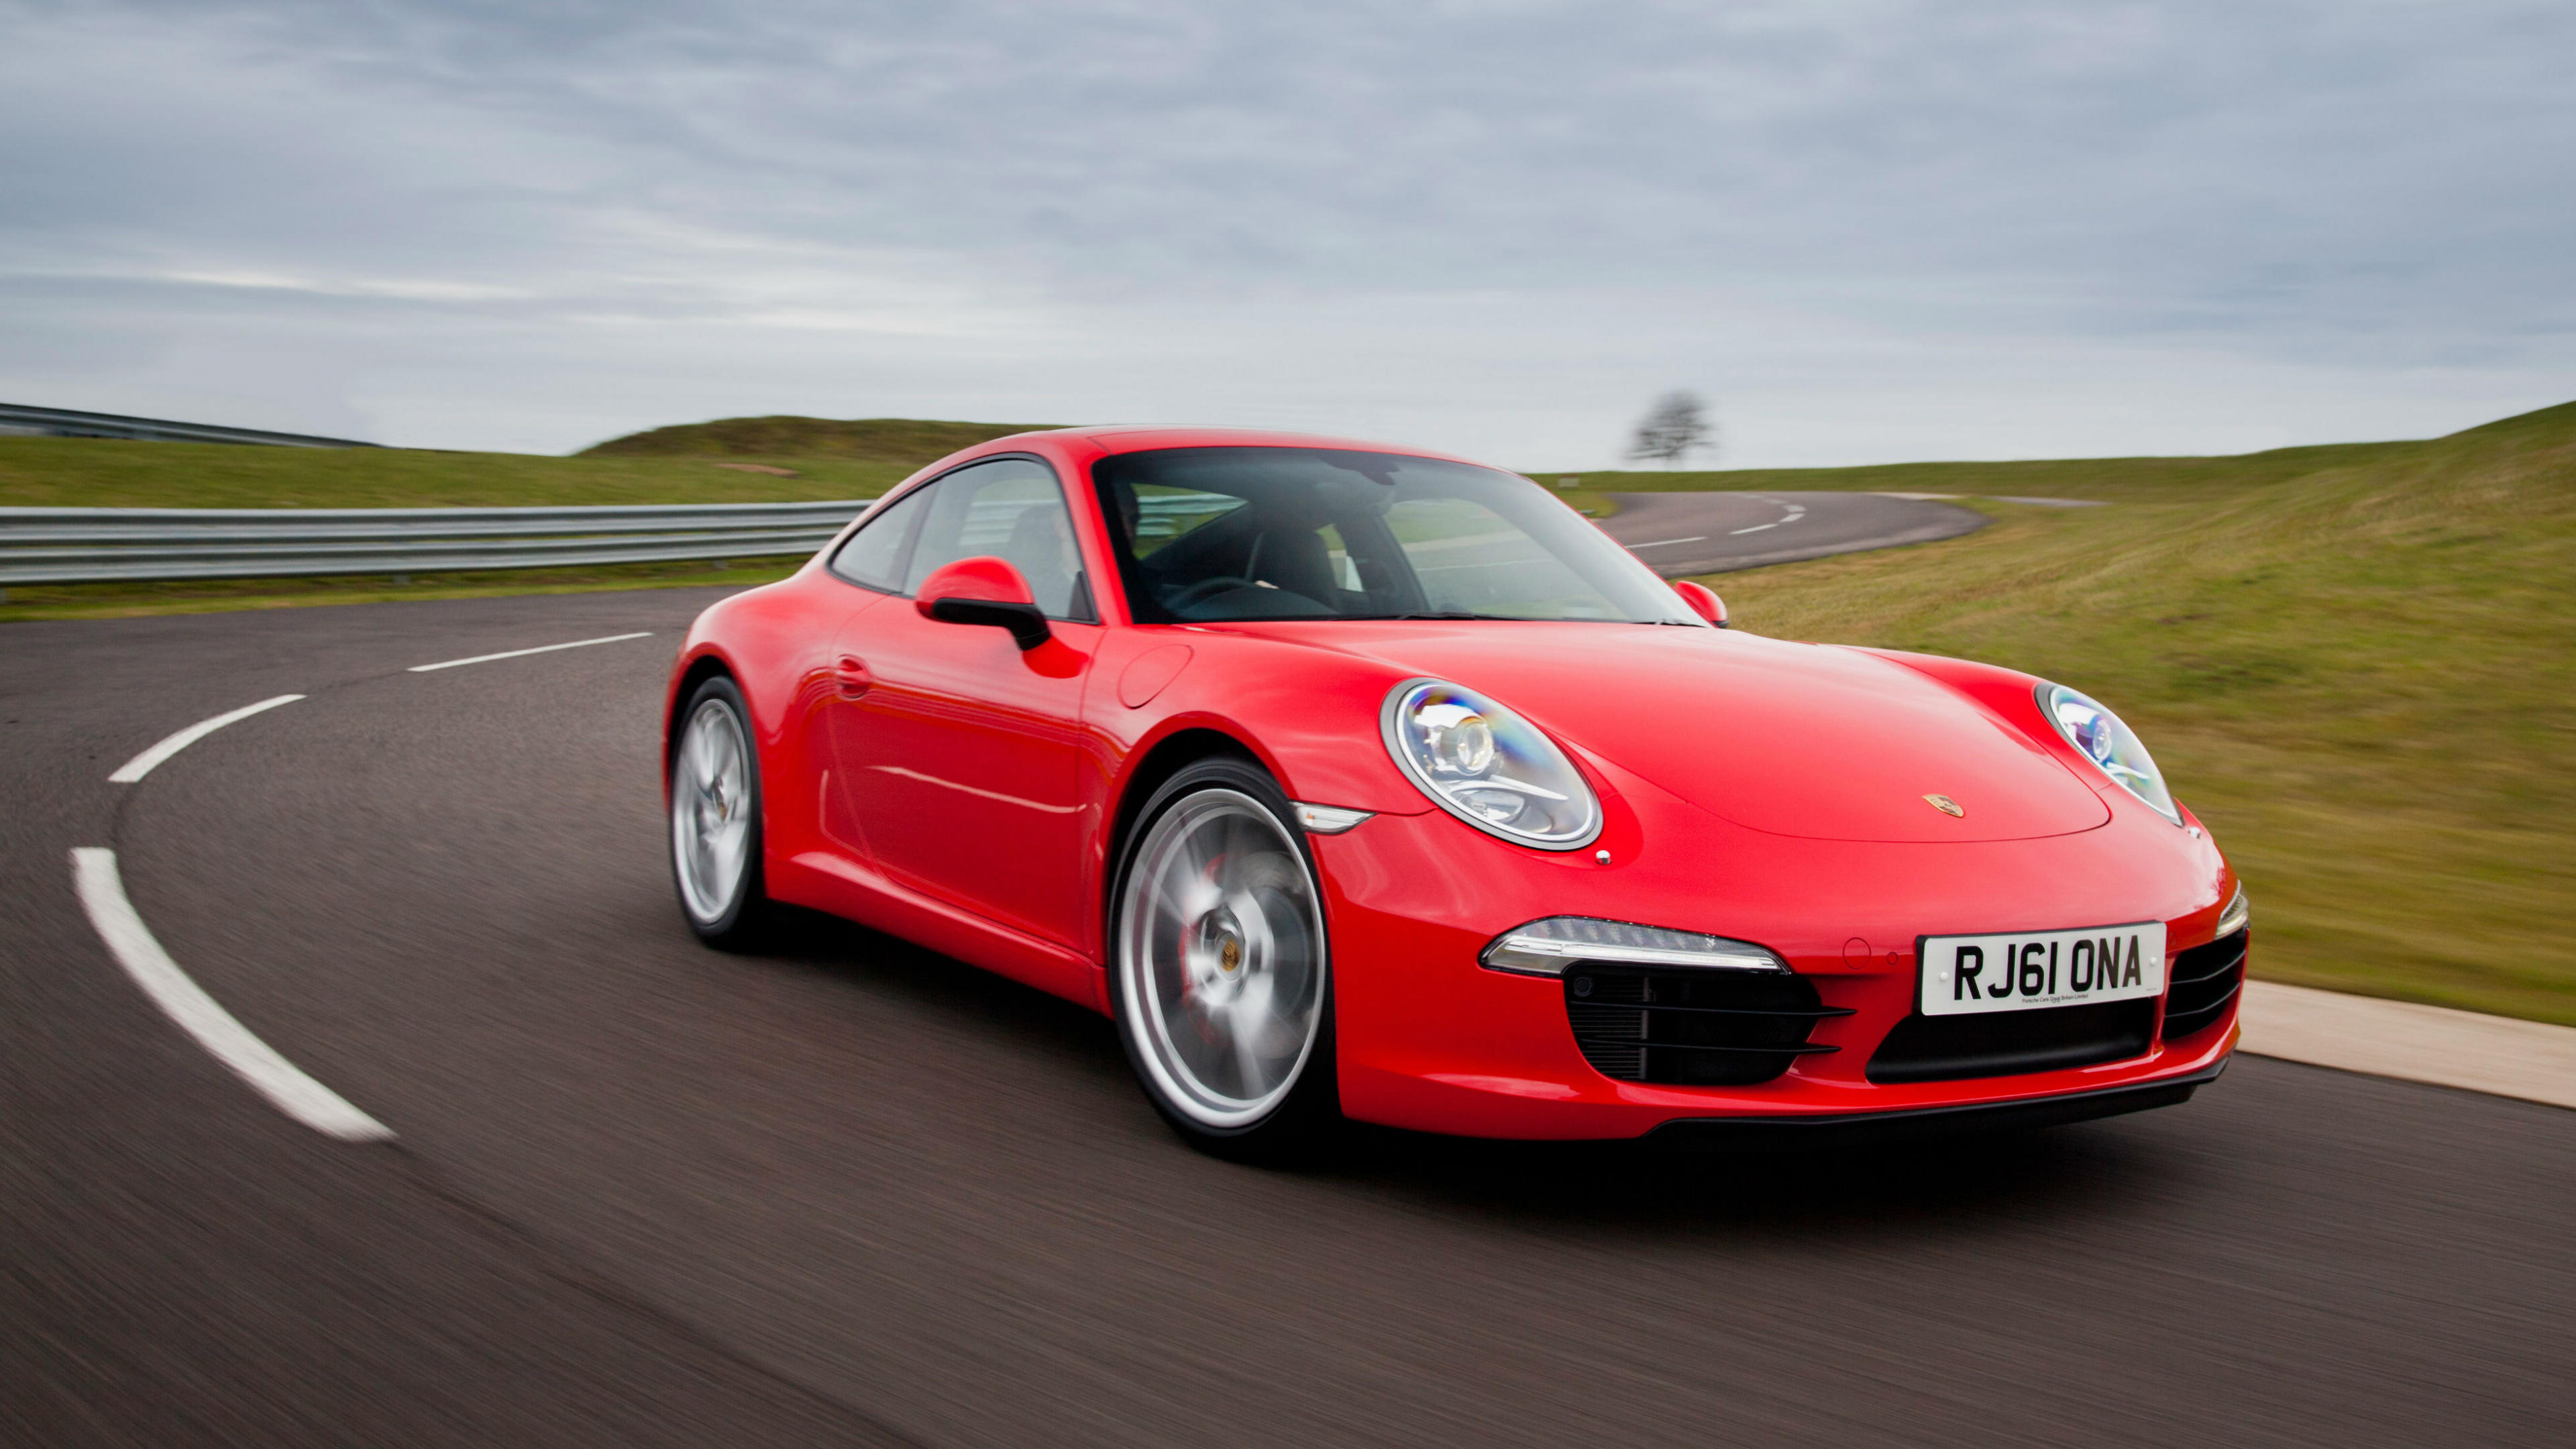 Porsche 911 Rojo en la Carretera Durante el Día. Wallpaper in 3840x2160 Resolution